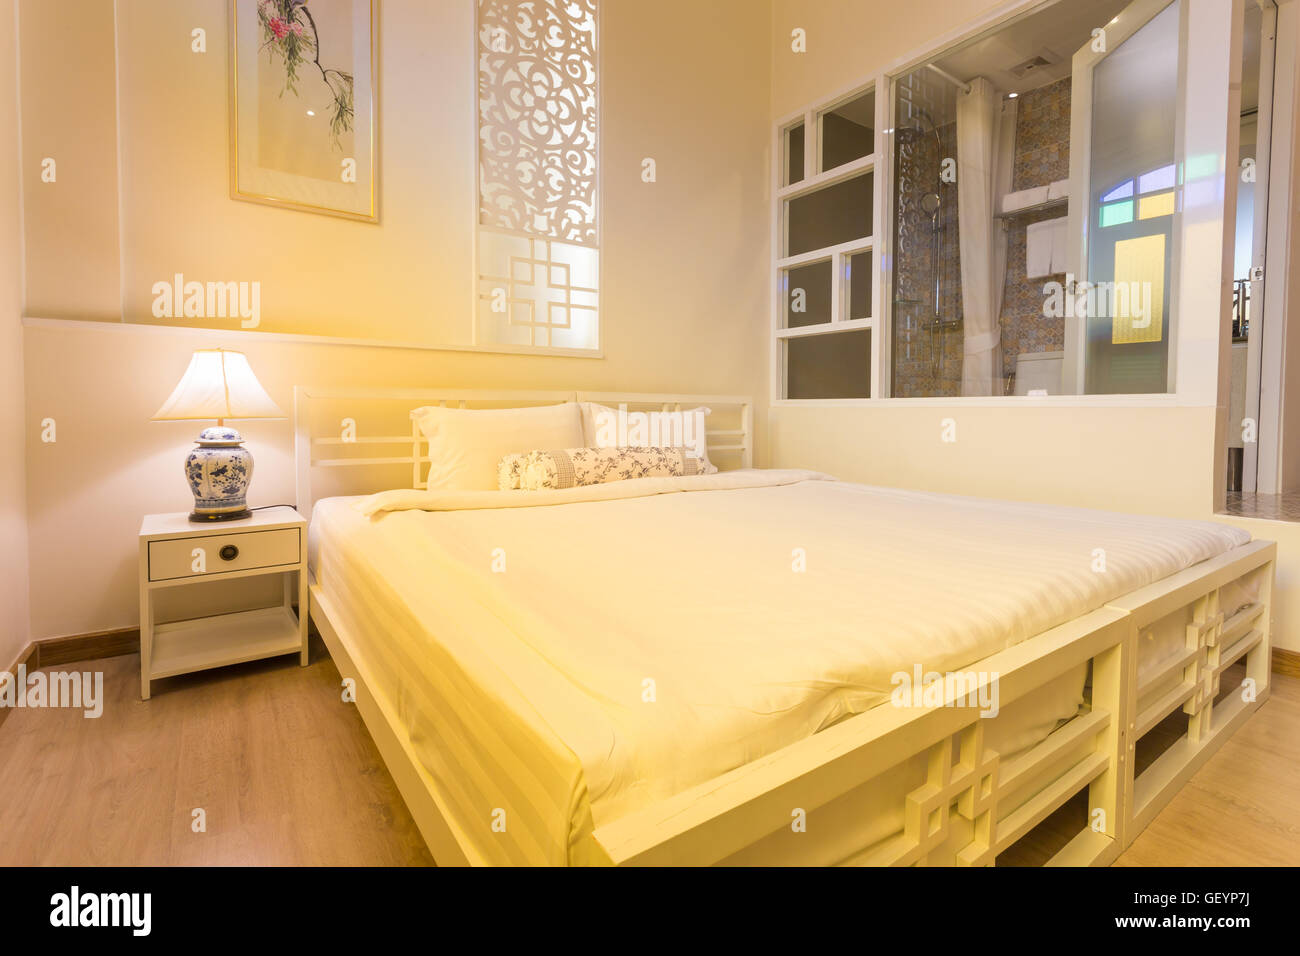 Dormitorio abstractos en cálidos colores claros. Gran cama doble cómoda en una elegante habitación classic Foto de stock